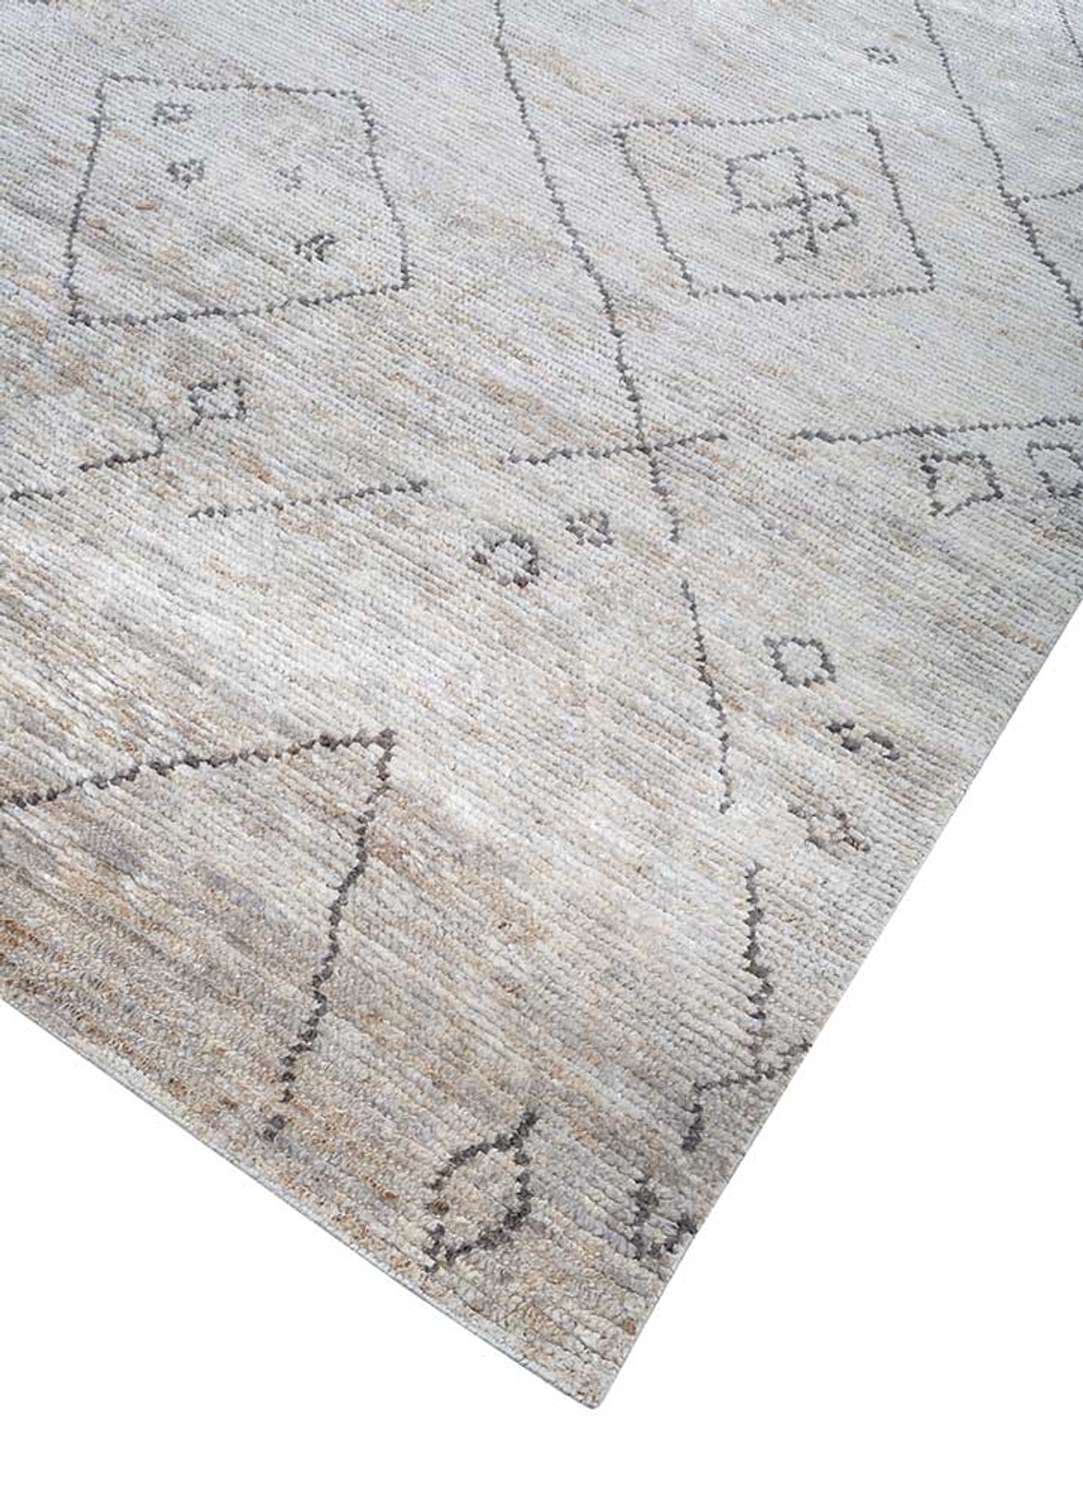 Sisalový koberec - 300 x 240 cm - bílá